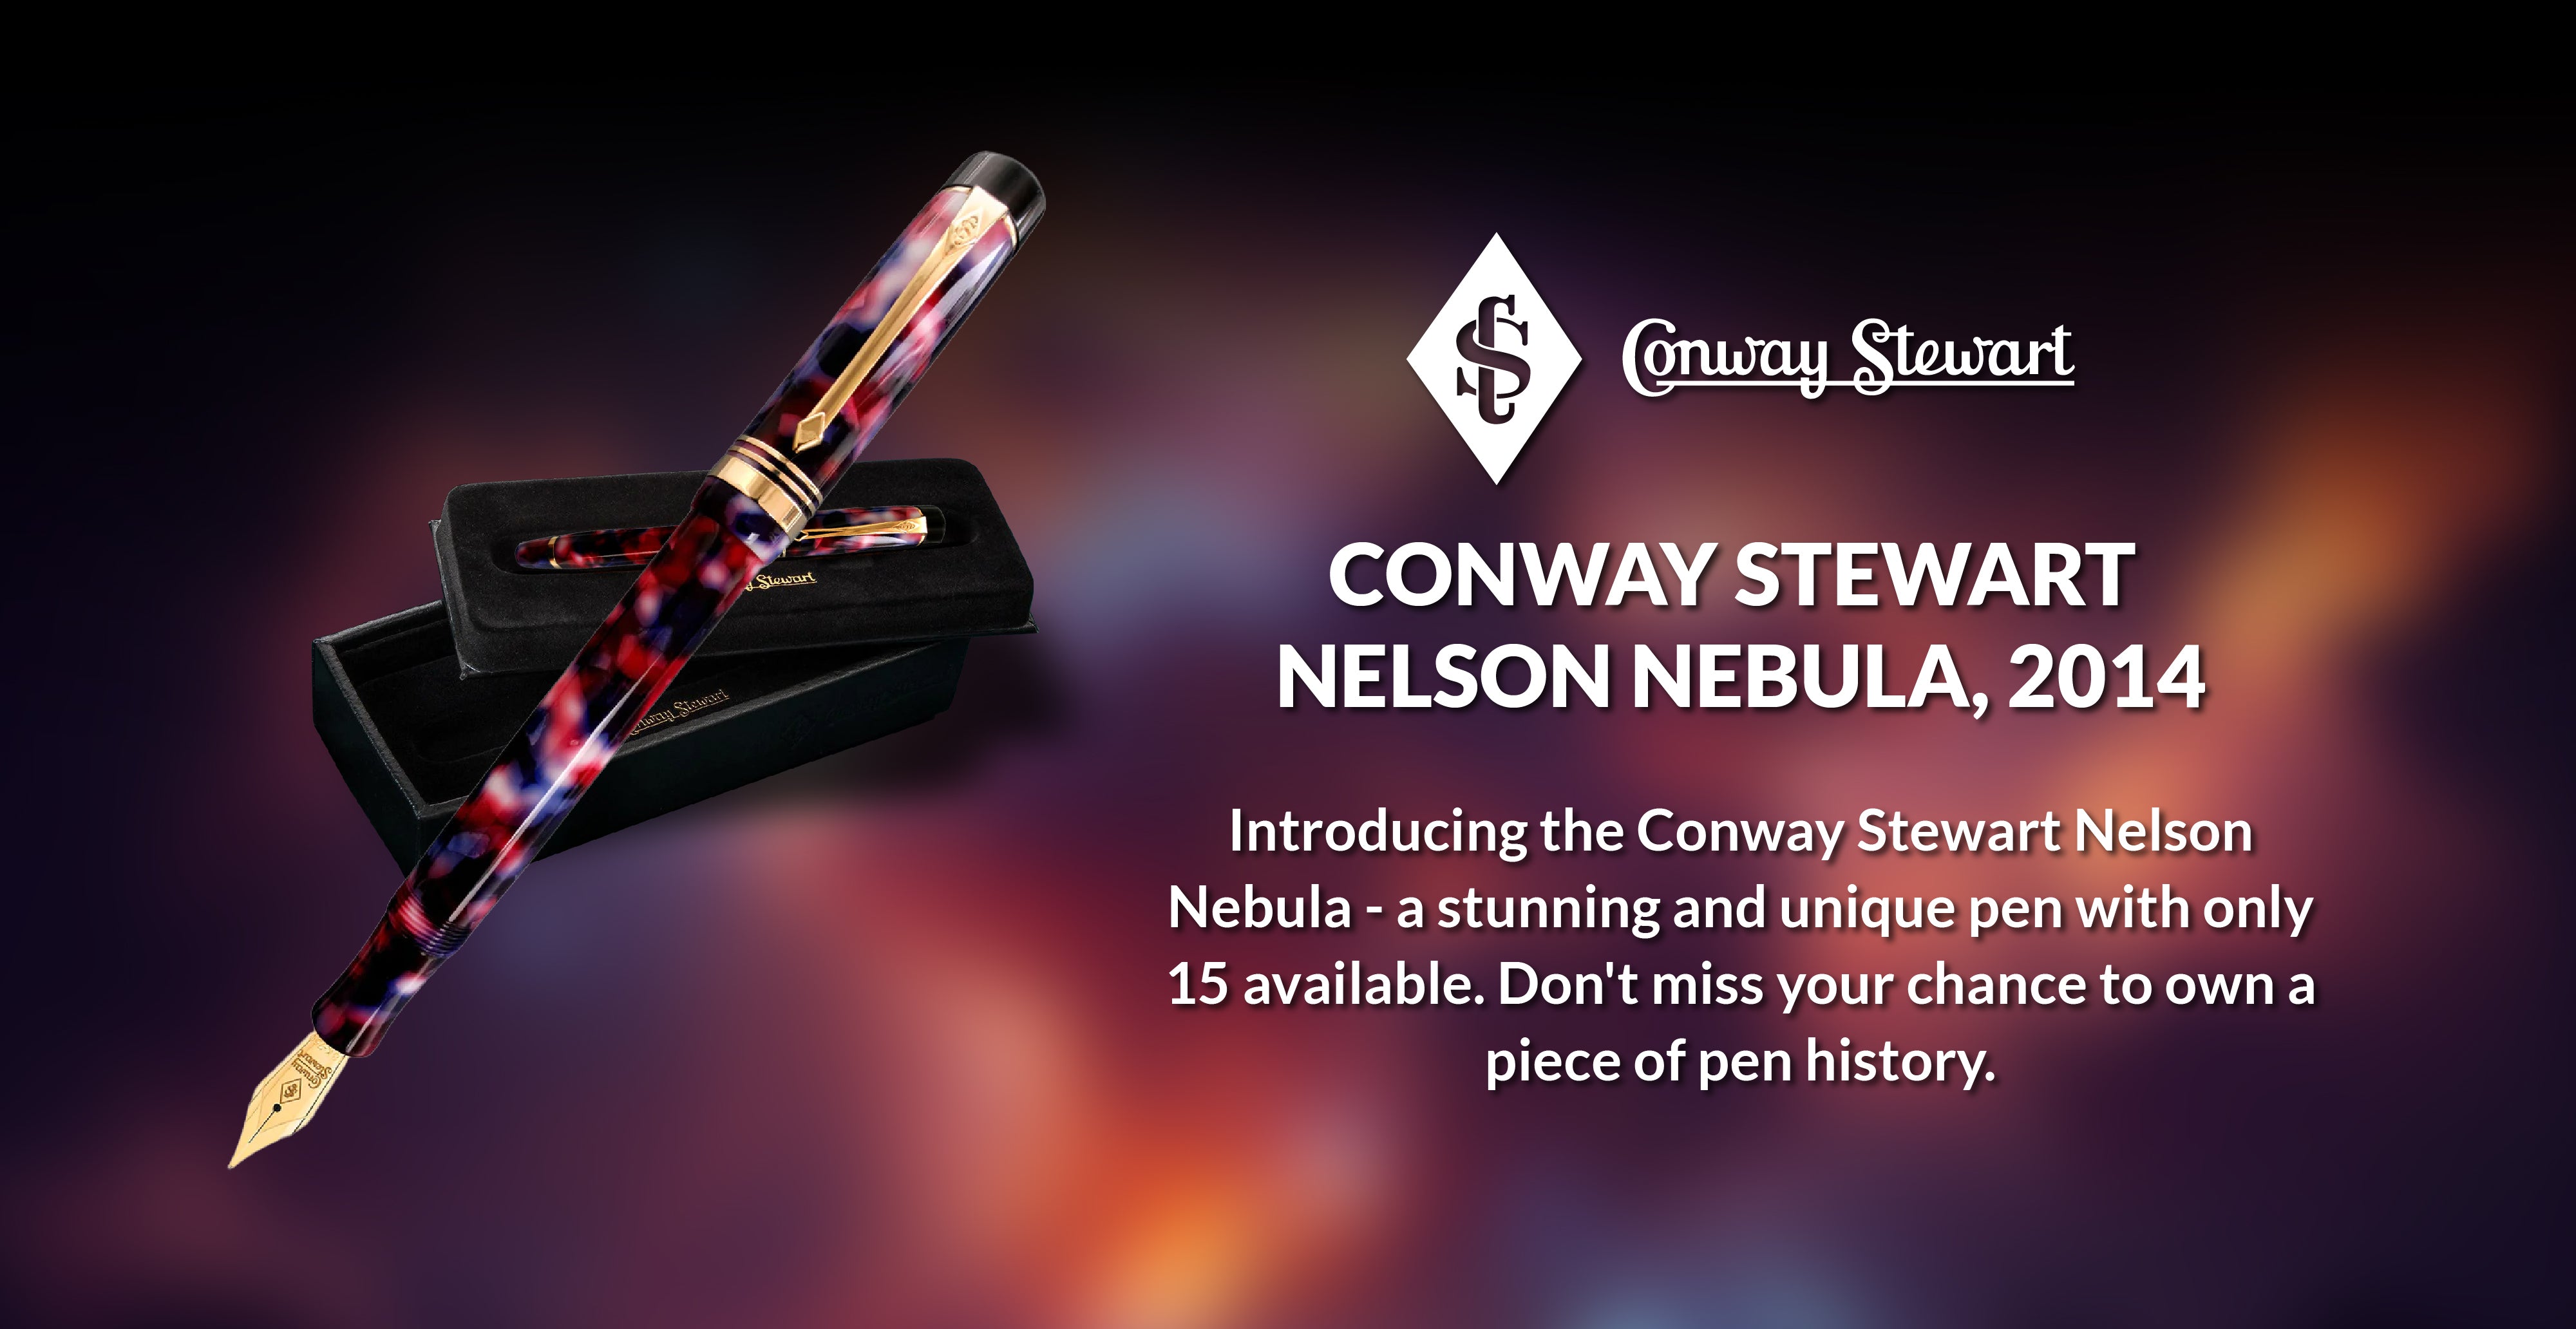 Conway Stewart Nelson Nebula, 2014 - Conway Stewart